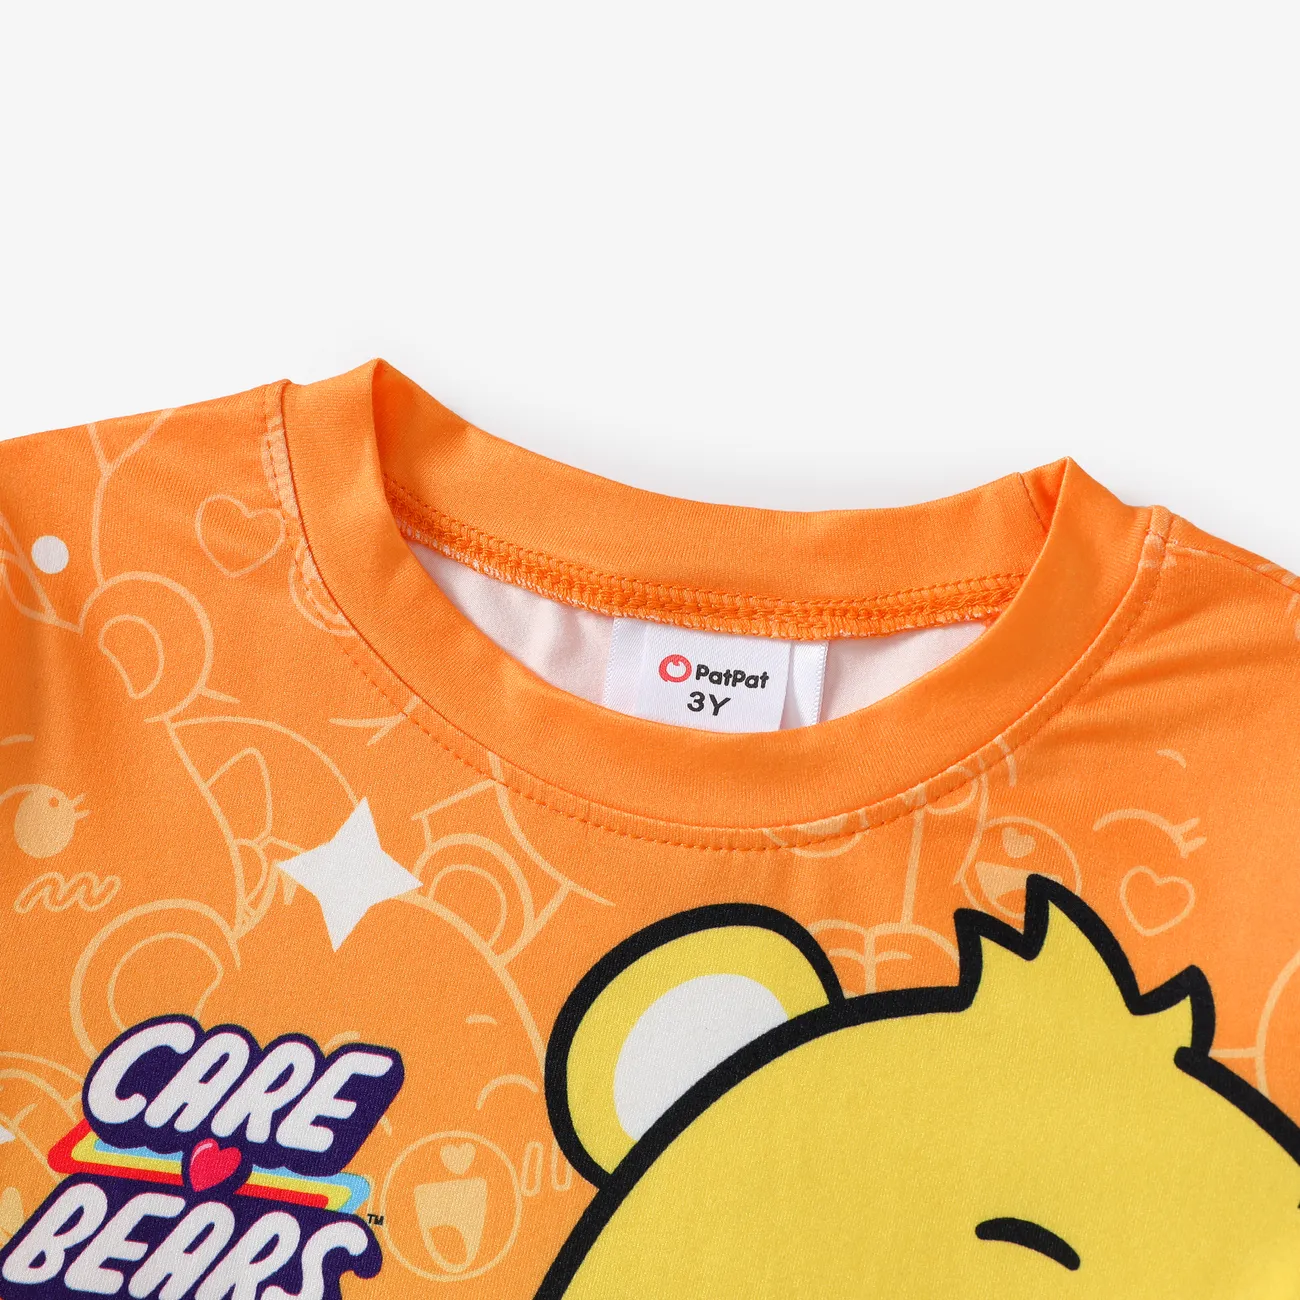 Gli Orsetti del Cuore Unisex Infantile Maglietta Arancione big image 1